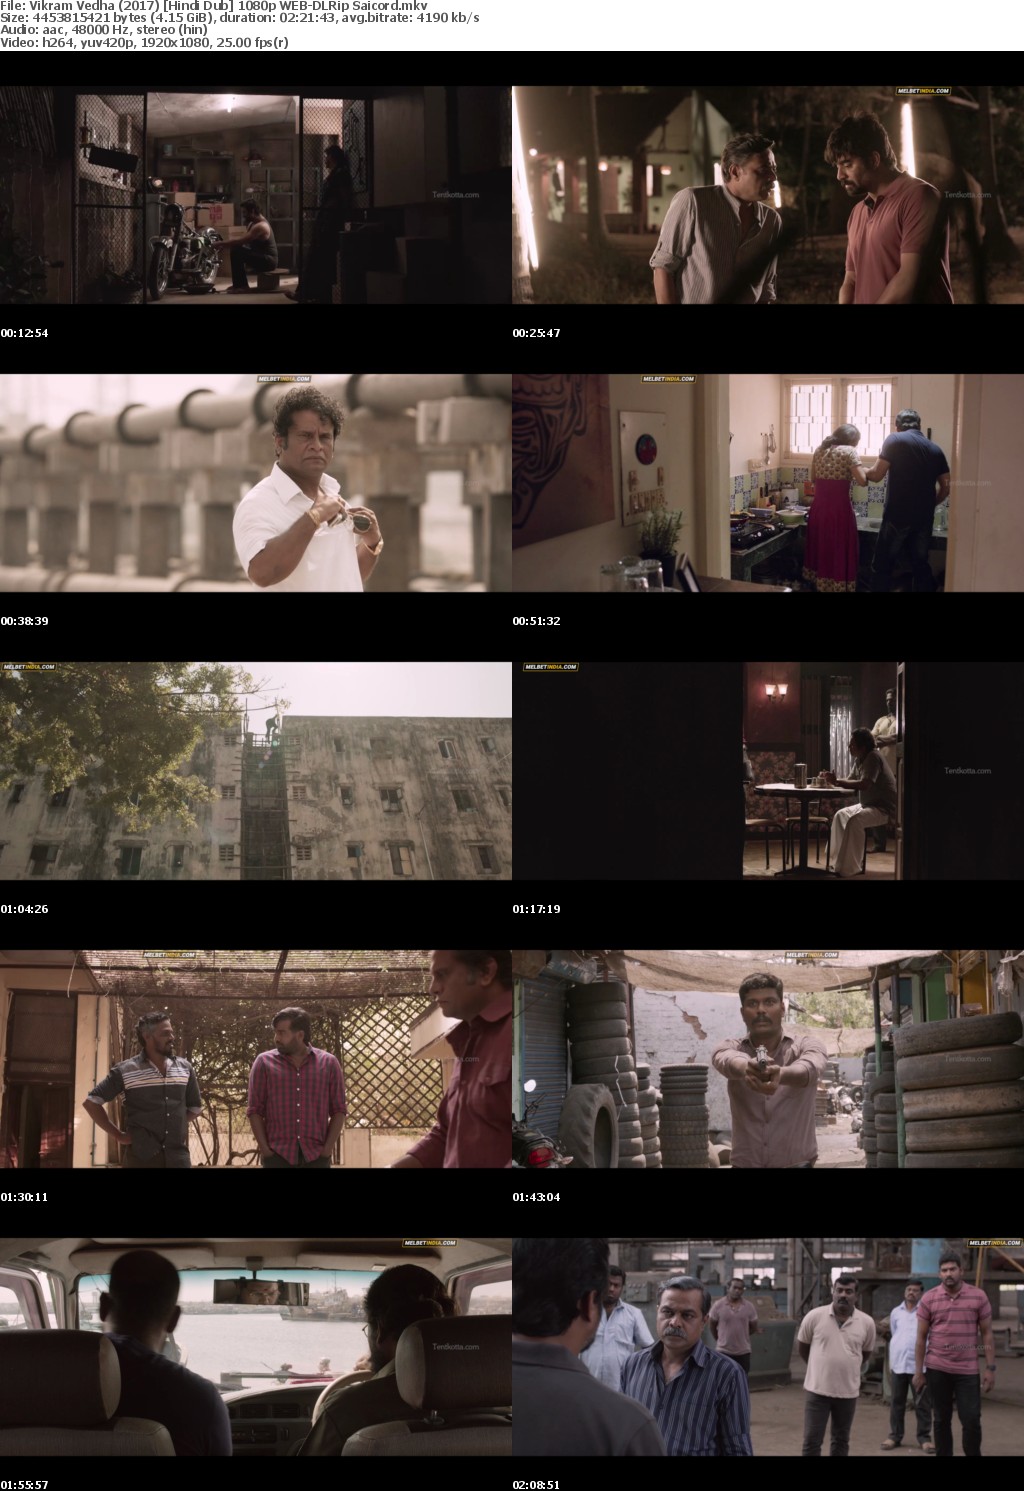 Vikram Vedha (2017) Hindi Dub 1080p WEB-DLRip Saicord